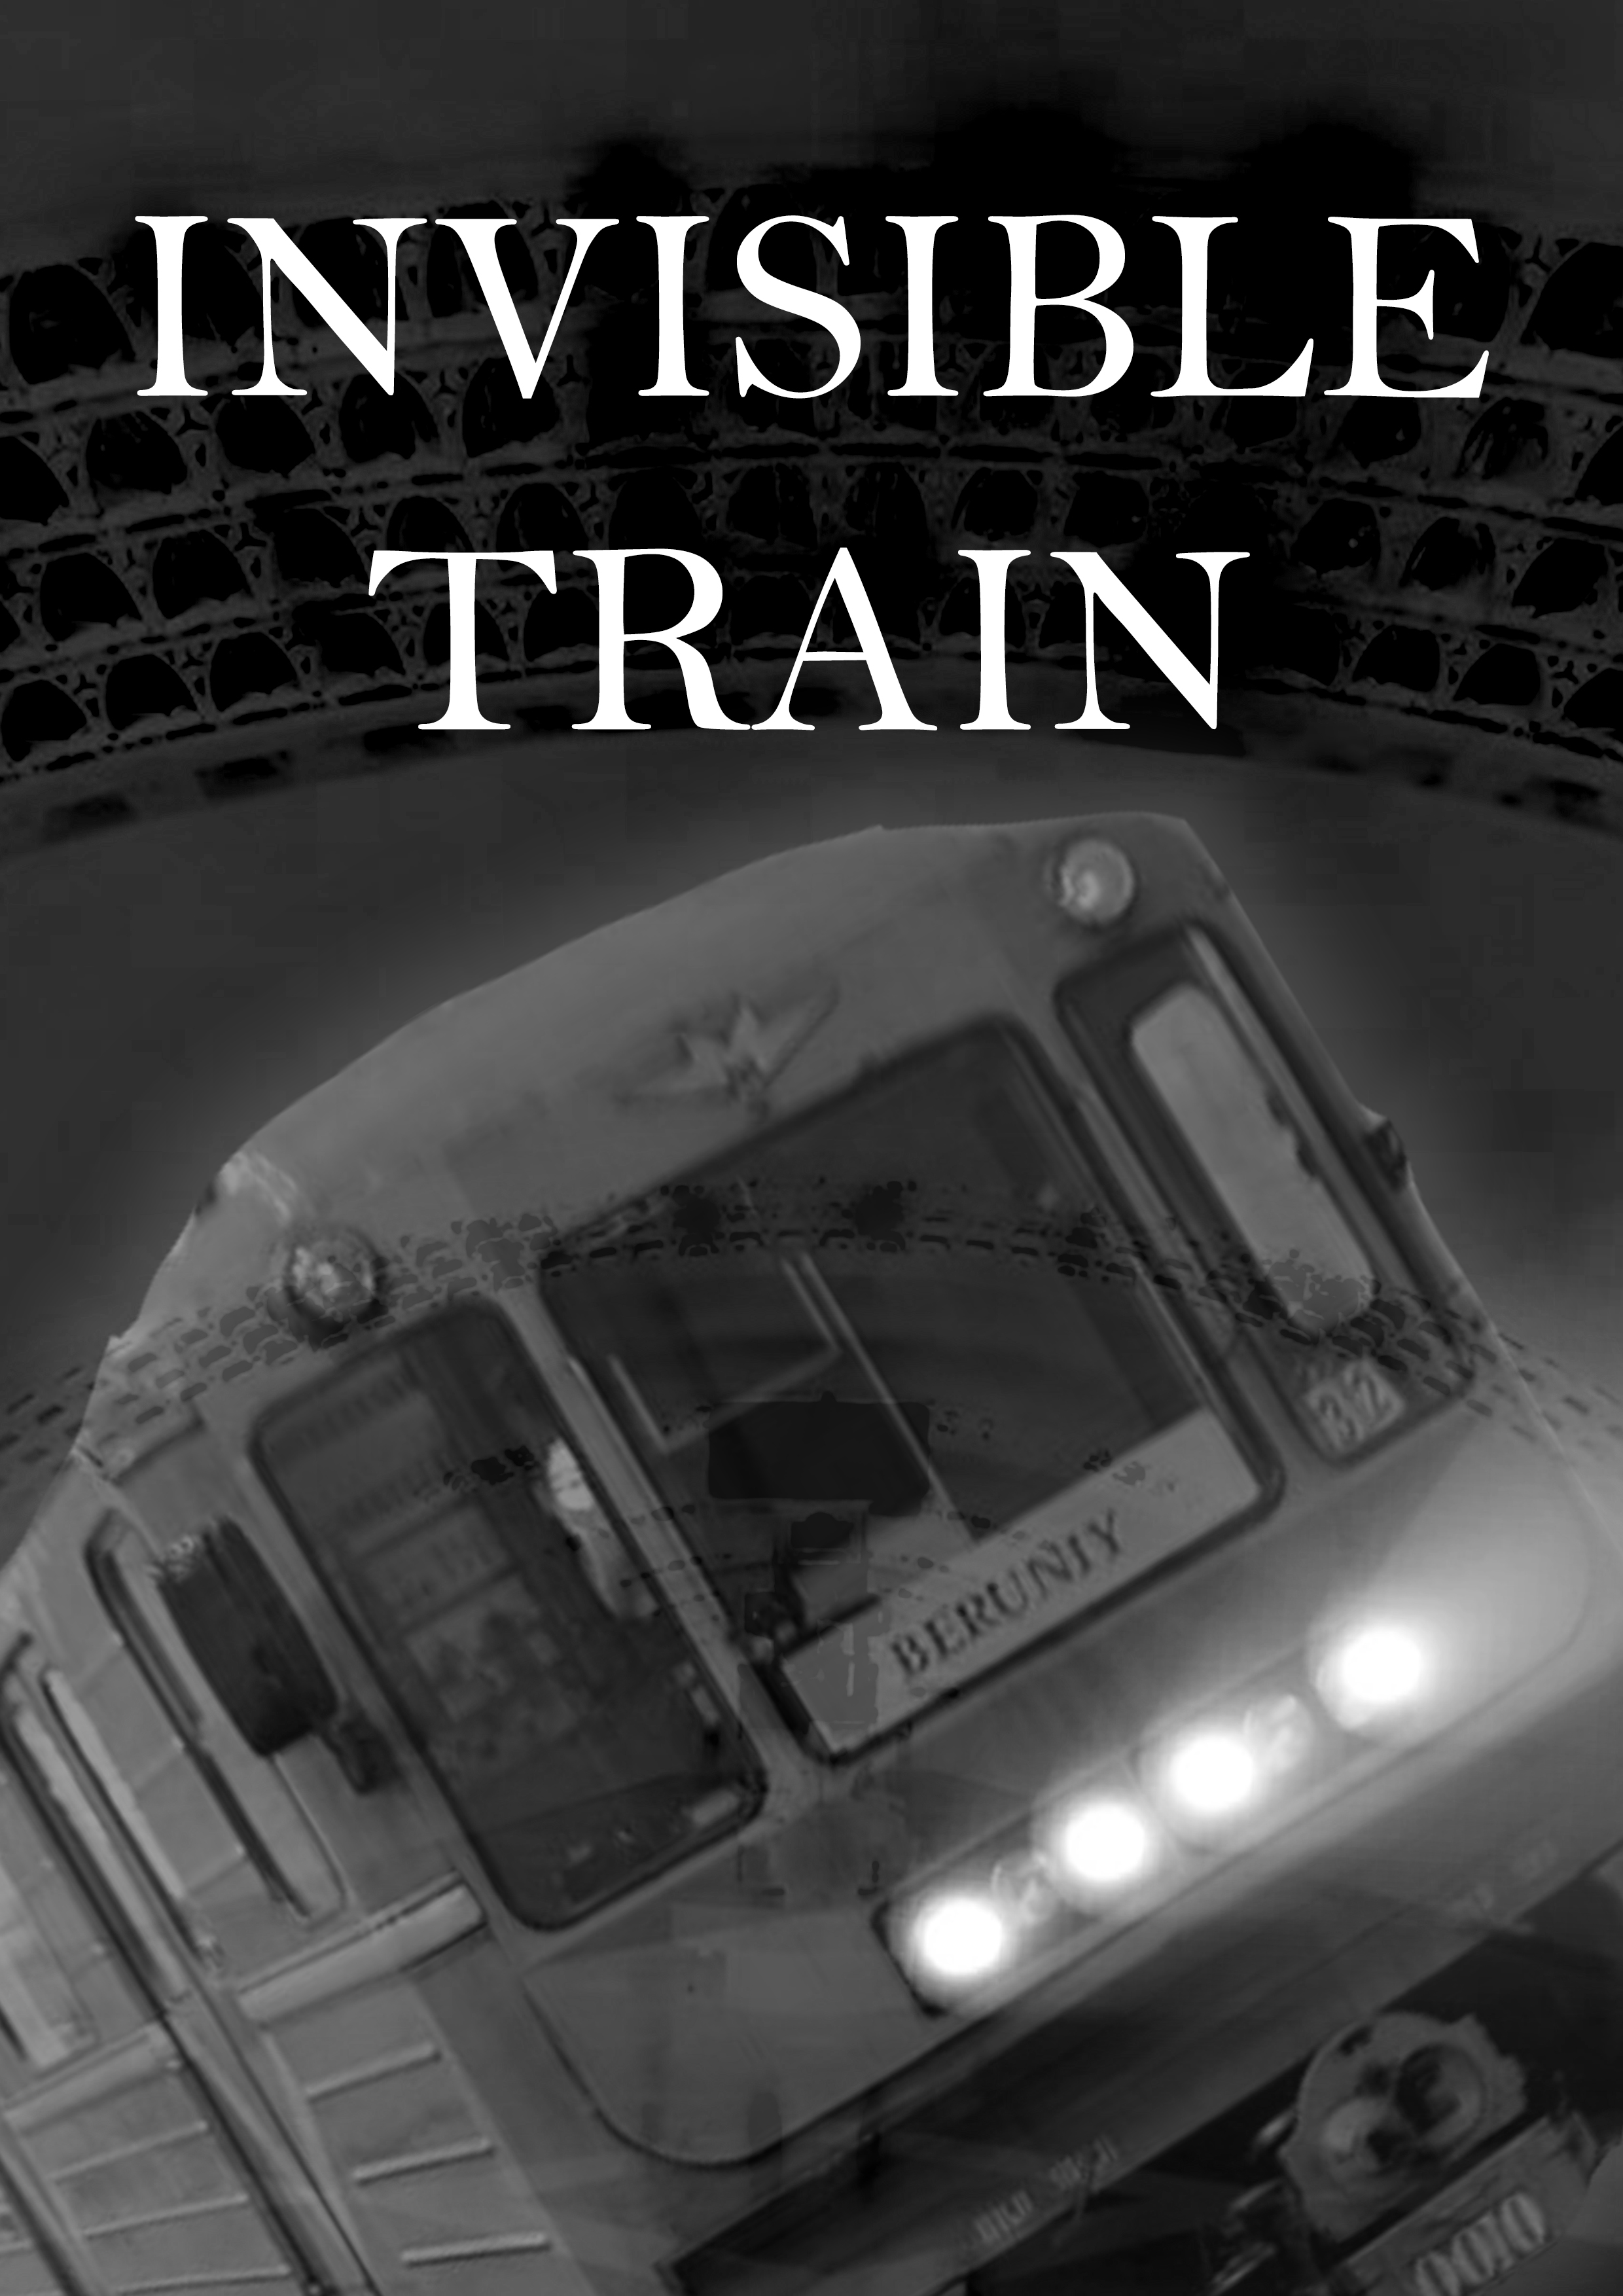 Invisible train